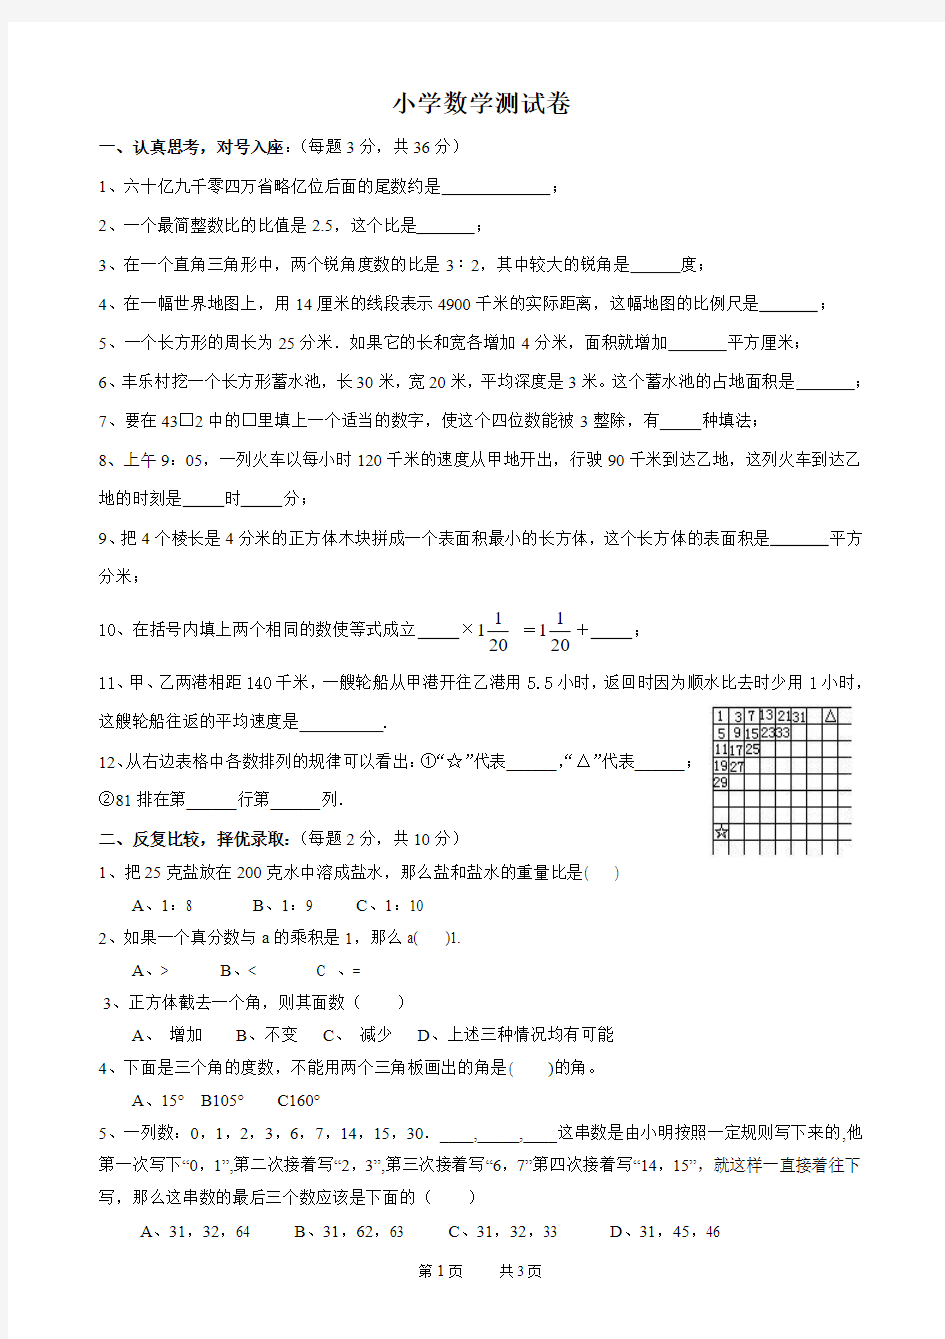 苏教版小升初数学考试真题卷(八)